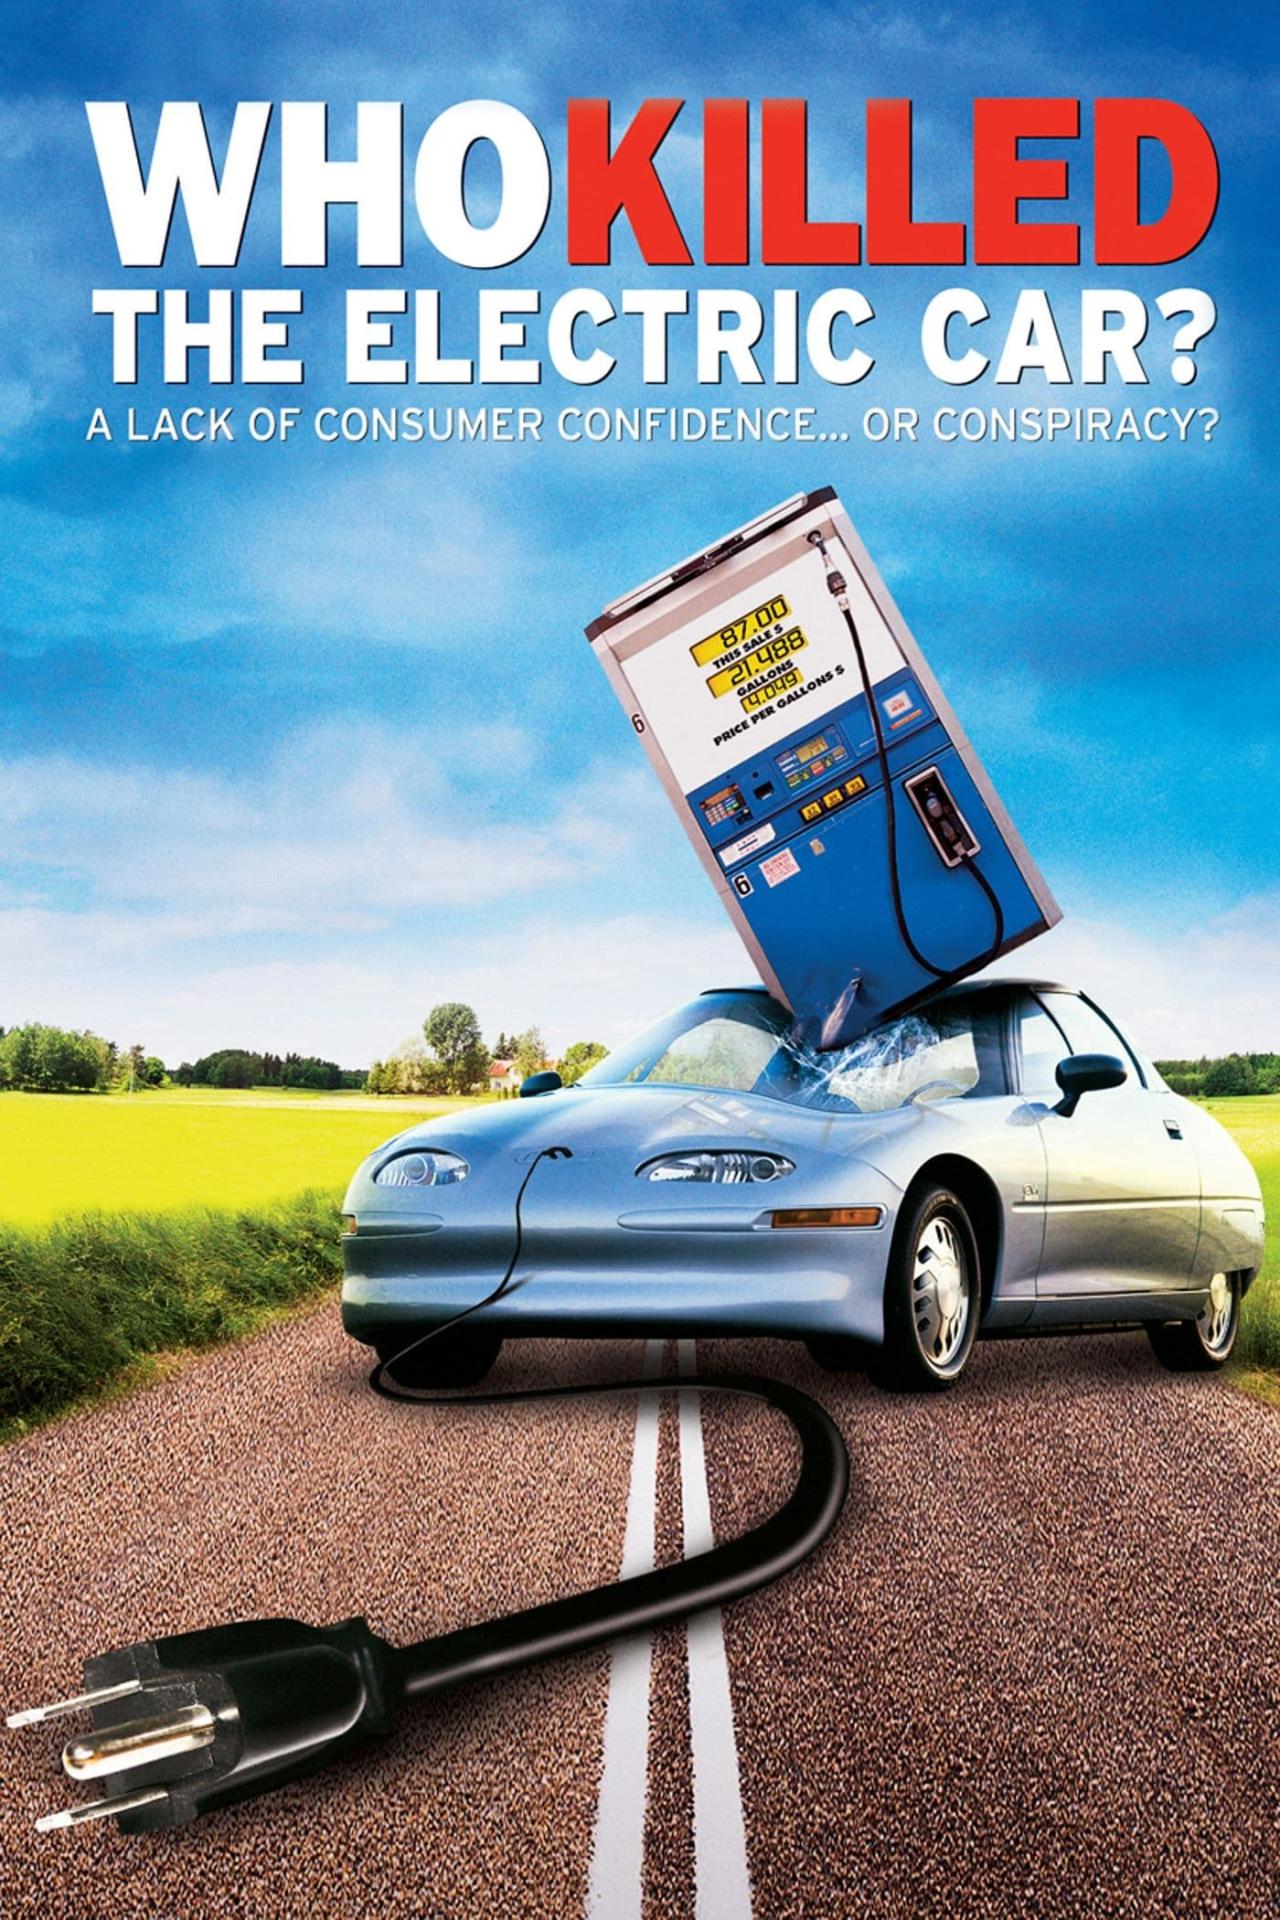 Qui a tué la voiture électrique ? est-il disponible sur Netflix ou autre ?